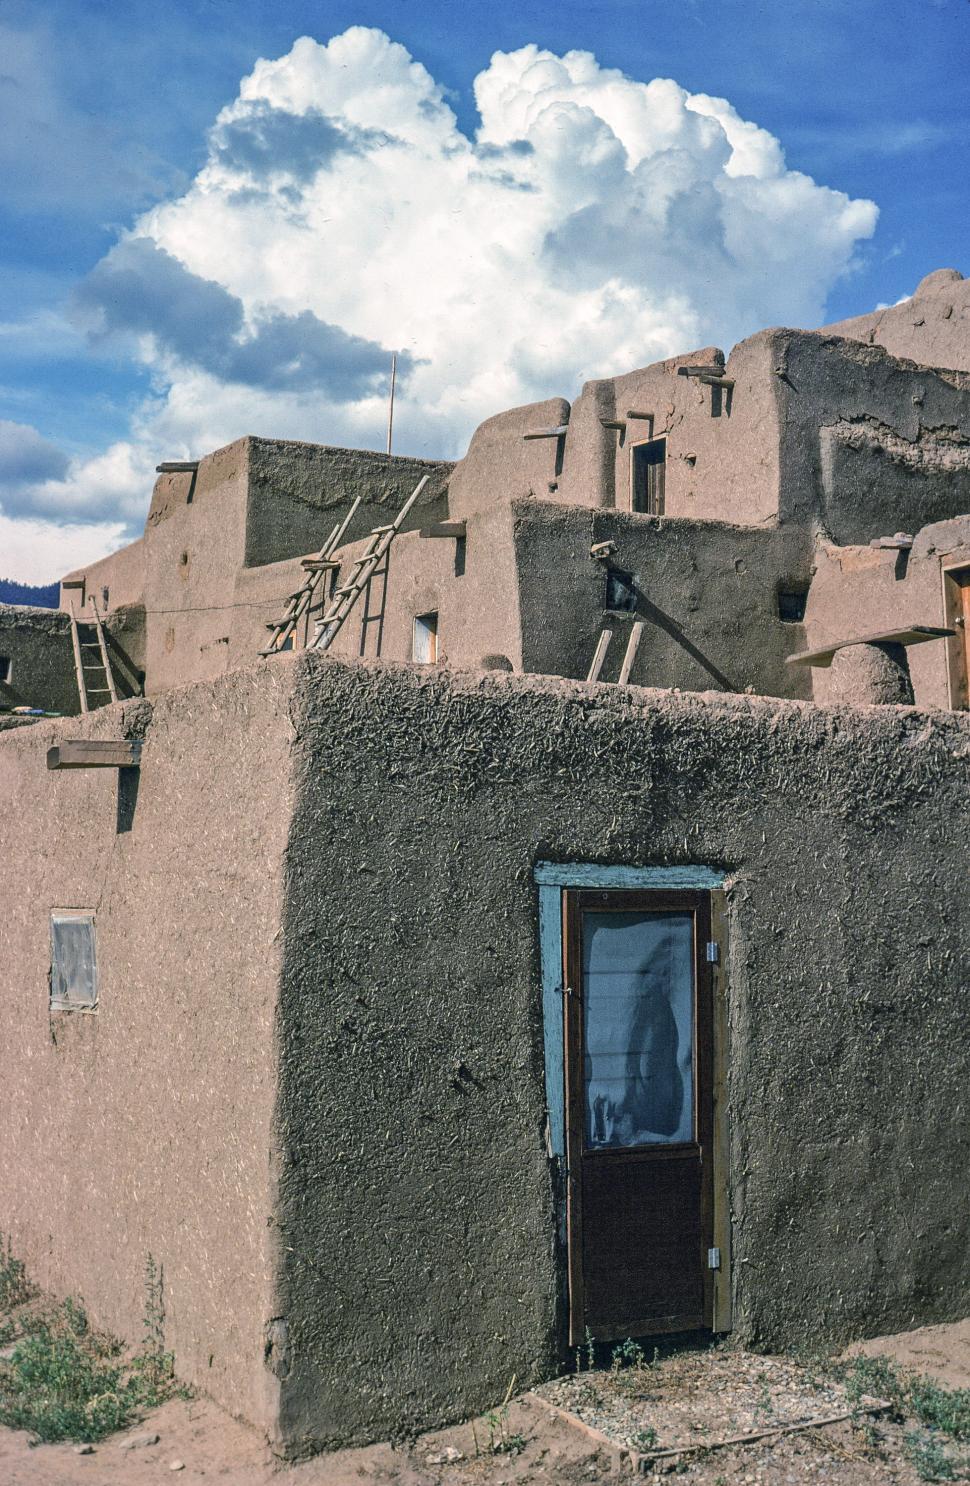 Free Image of Pueblo house door 